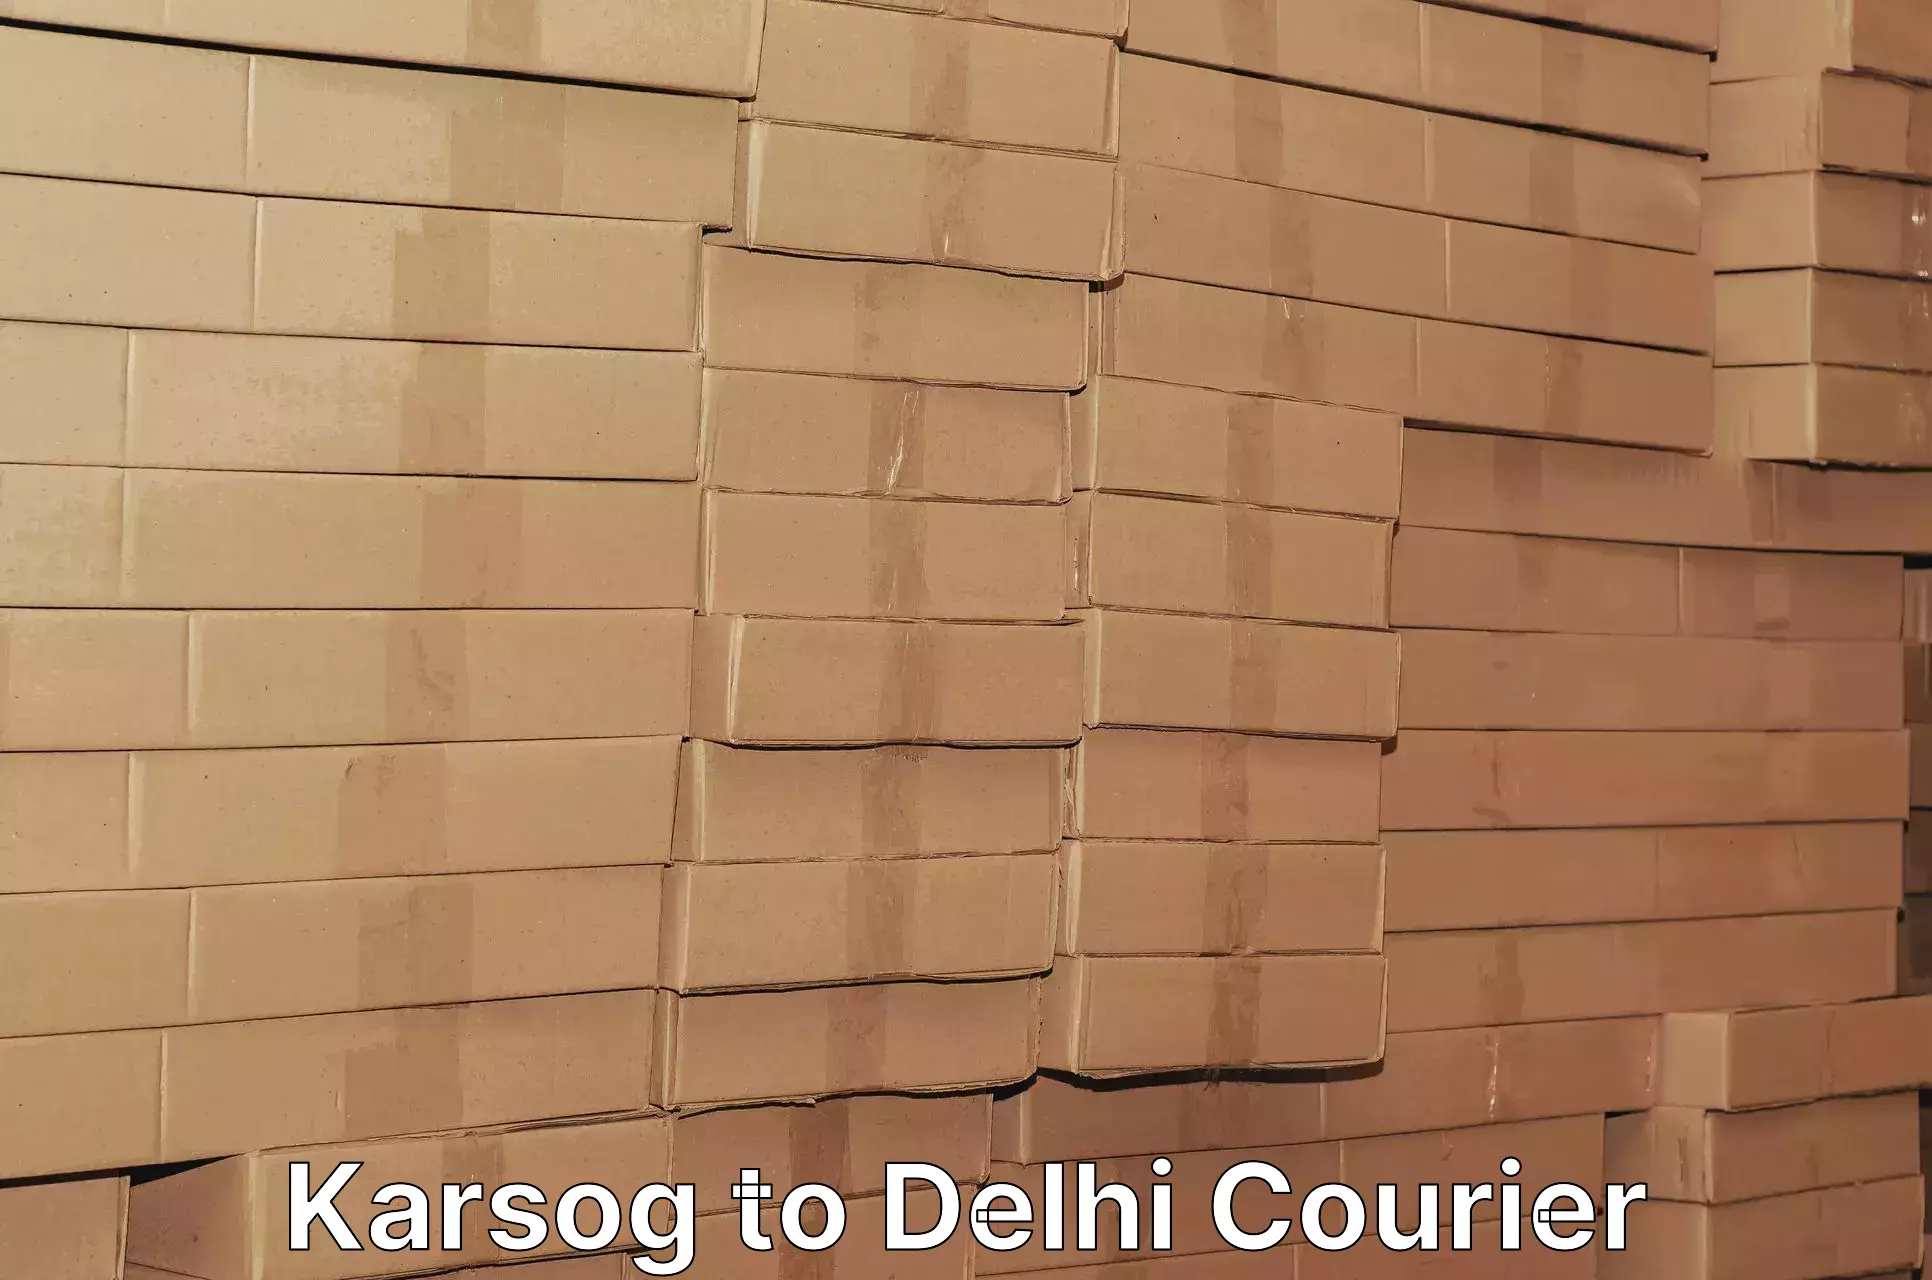 Premium courier services Karsog to Delhi